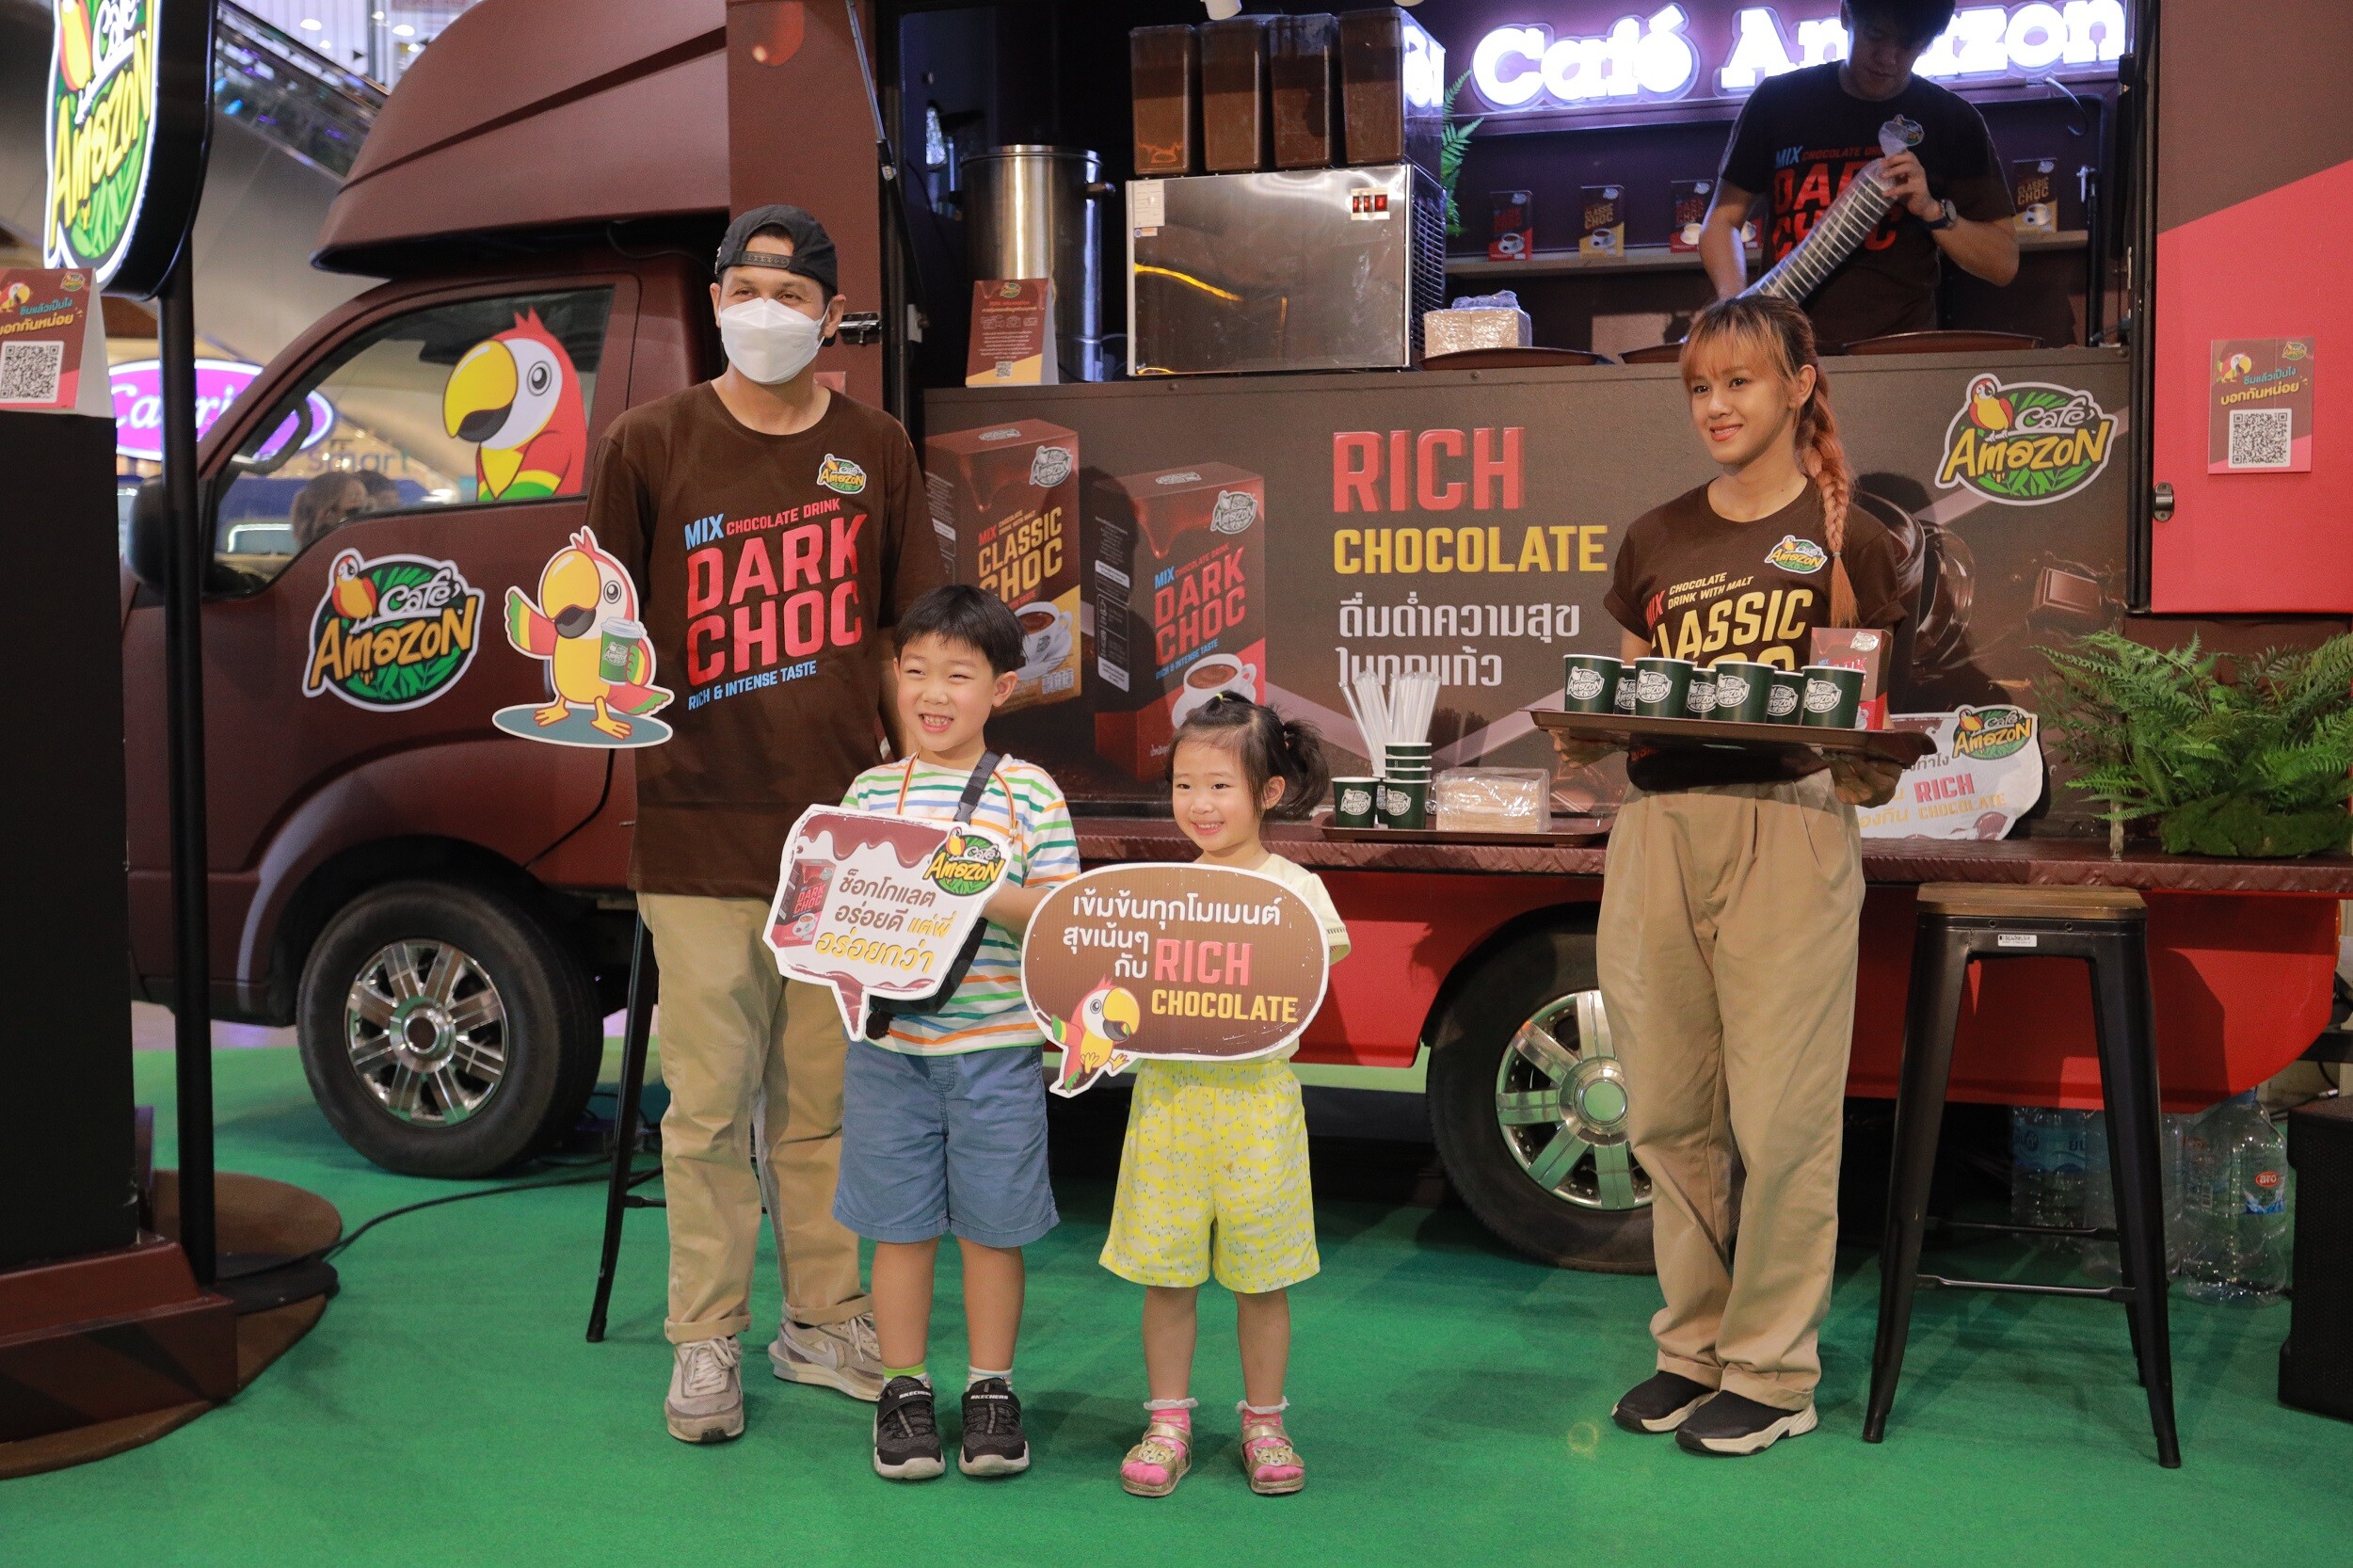 Cafe Amazon จัดทัพ "Cafe Amazon Rich Chocolate on Tour" ขนรถเครื่องดื่มช็อกโกแลตพร้อมชงพรีเมียมสุดชิคให้แฟน ๆ ได้ชิมทั่วประเทศ